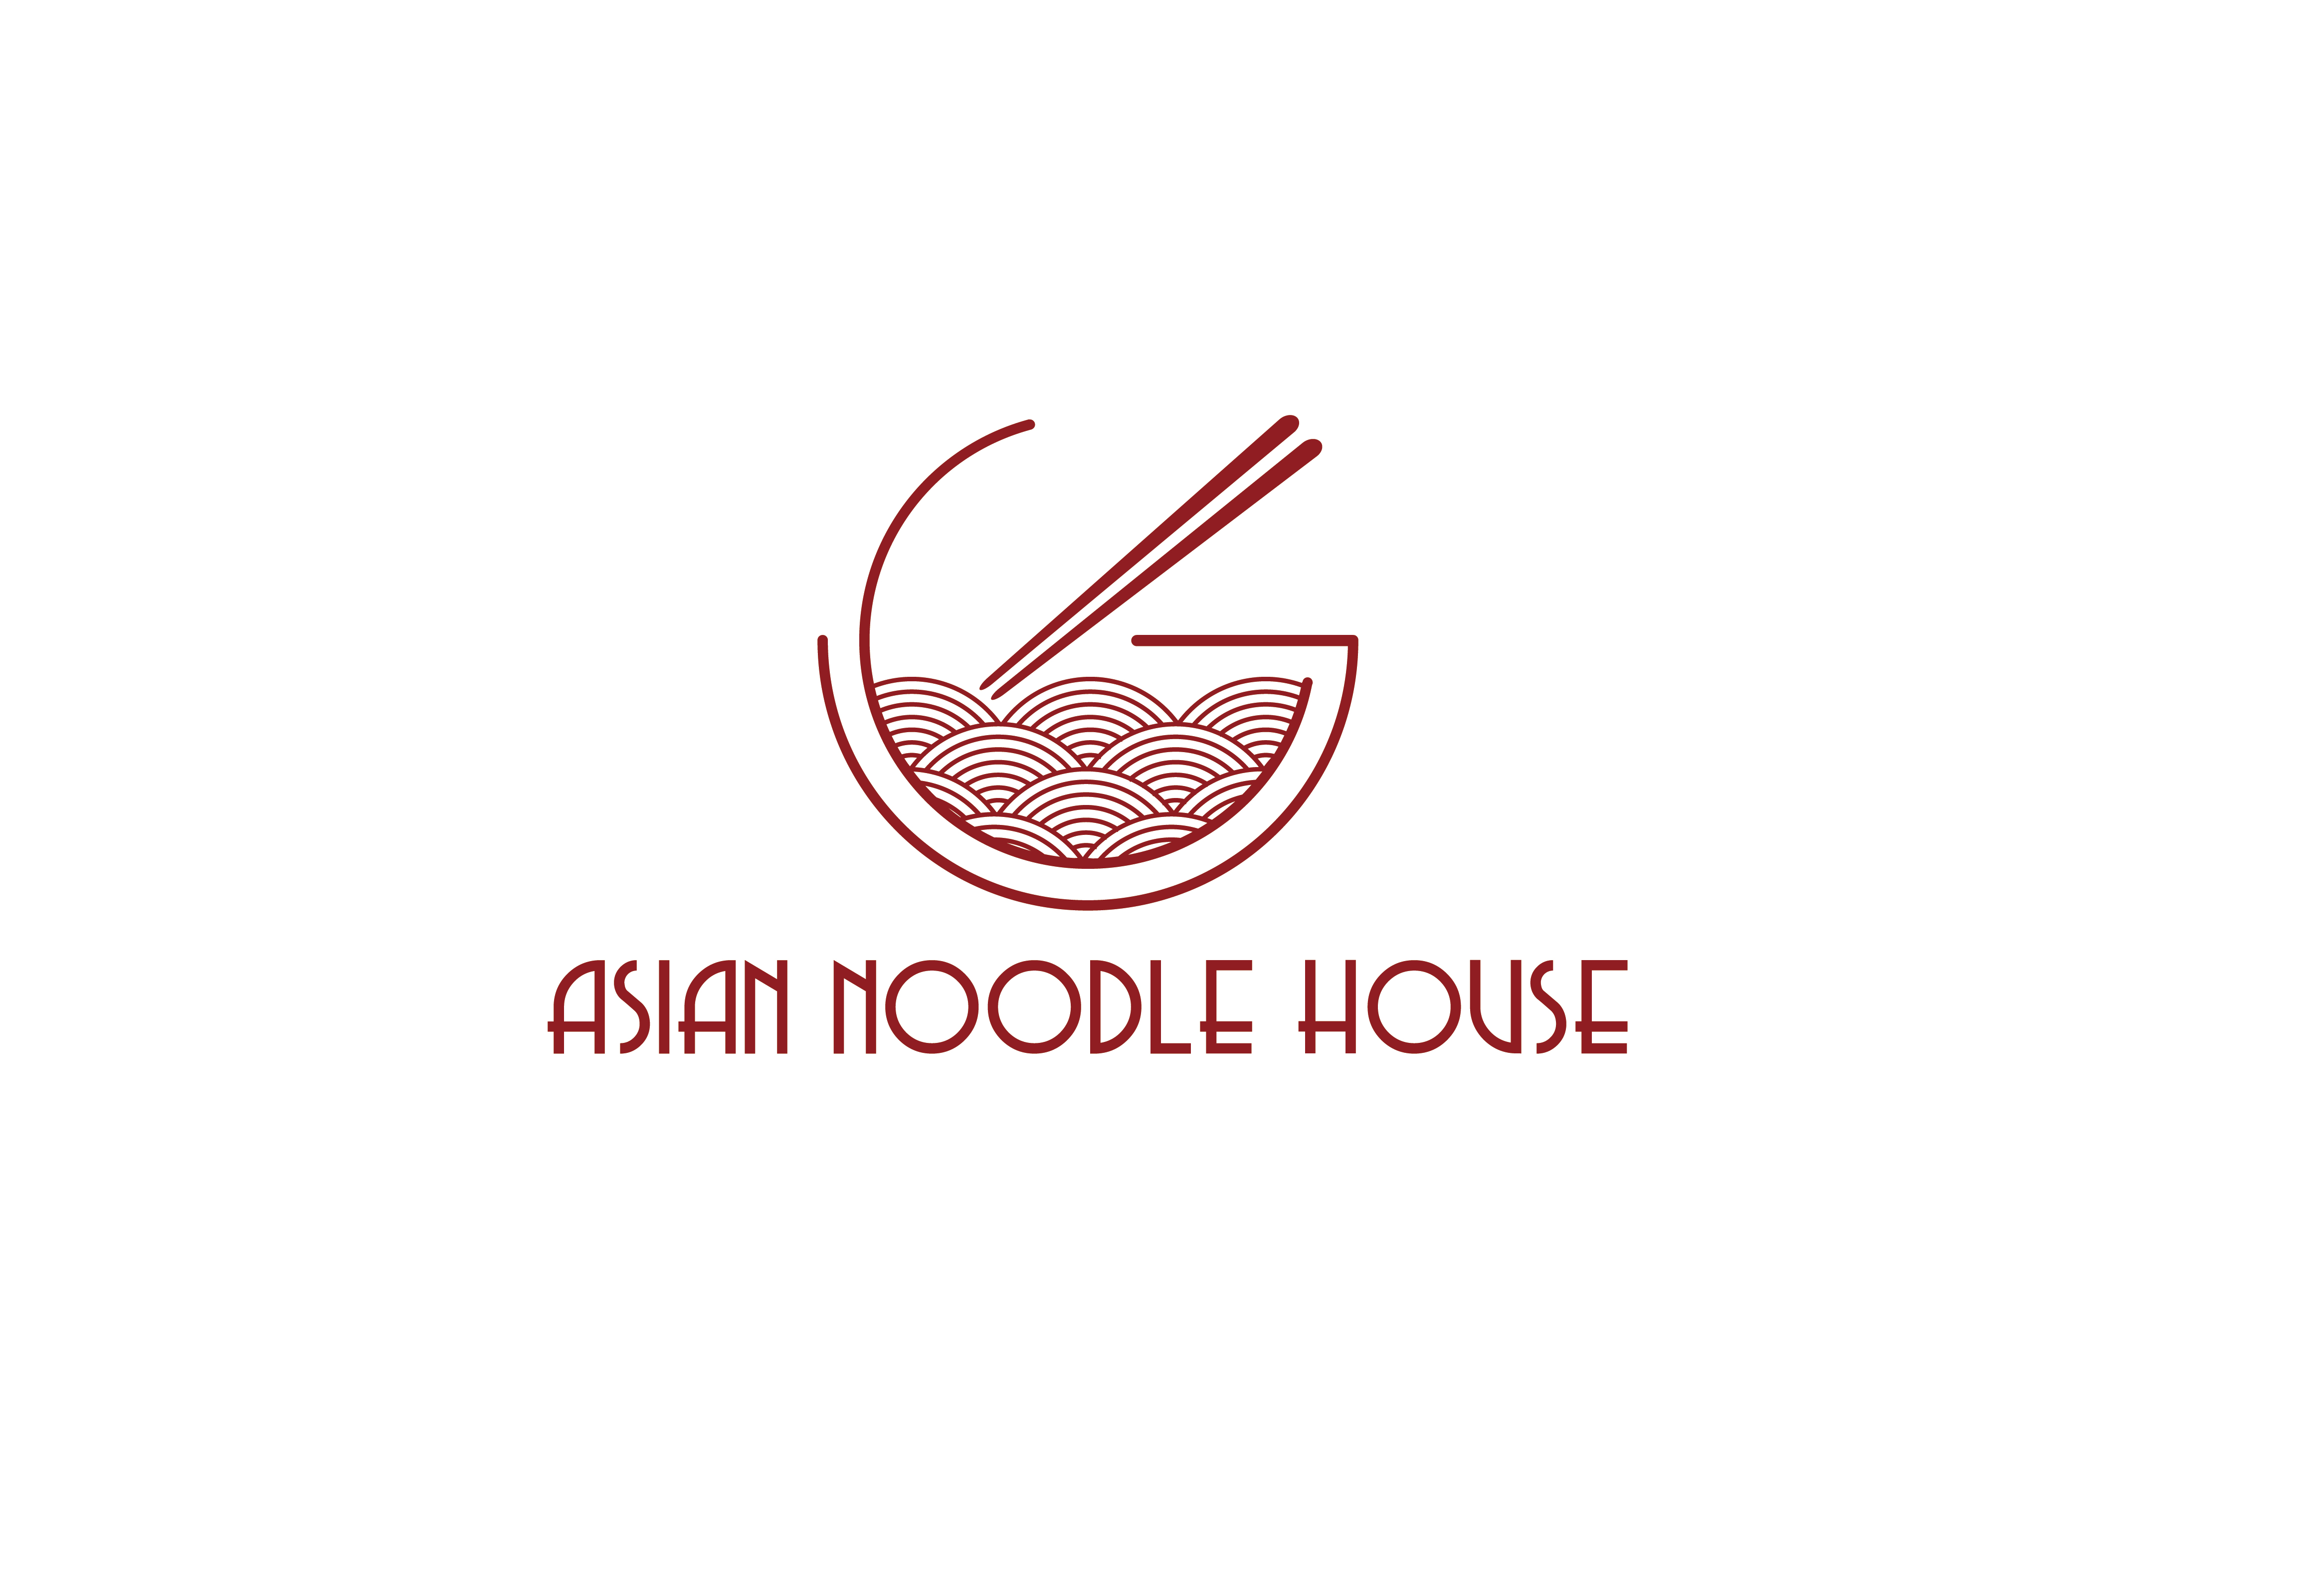 Asian Noodle House menu